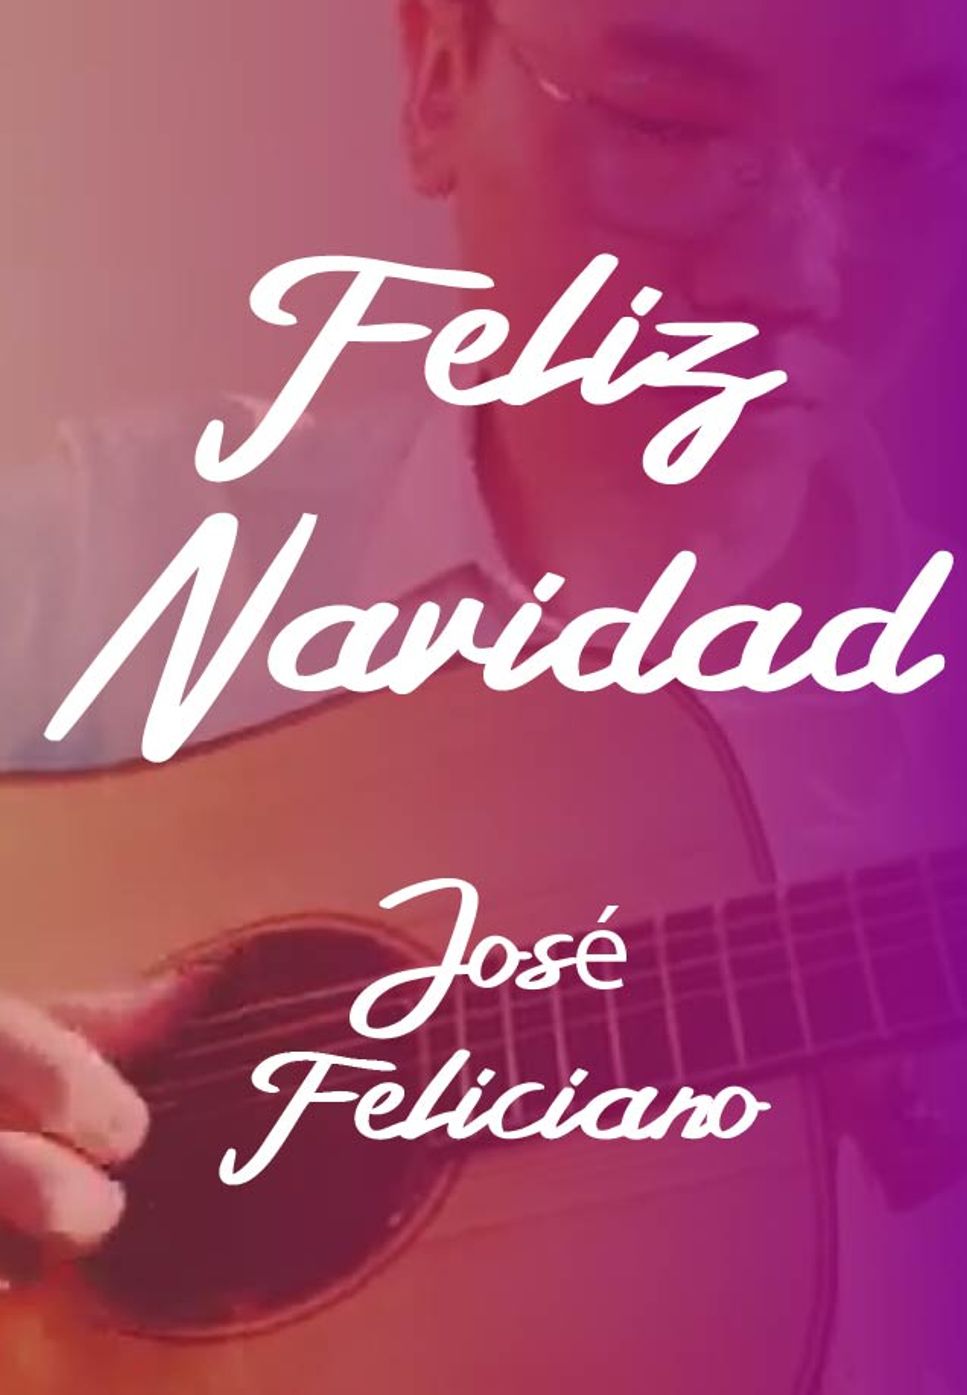 José Feliciano - Feliz Navidad (Fingerstyle) by HowMing